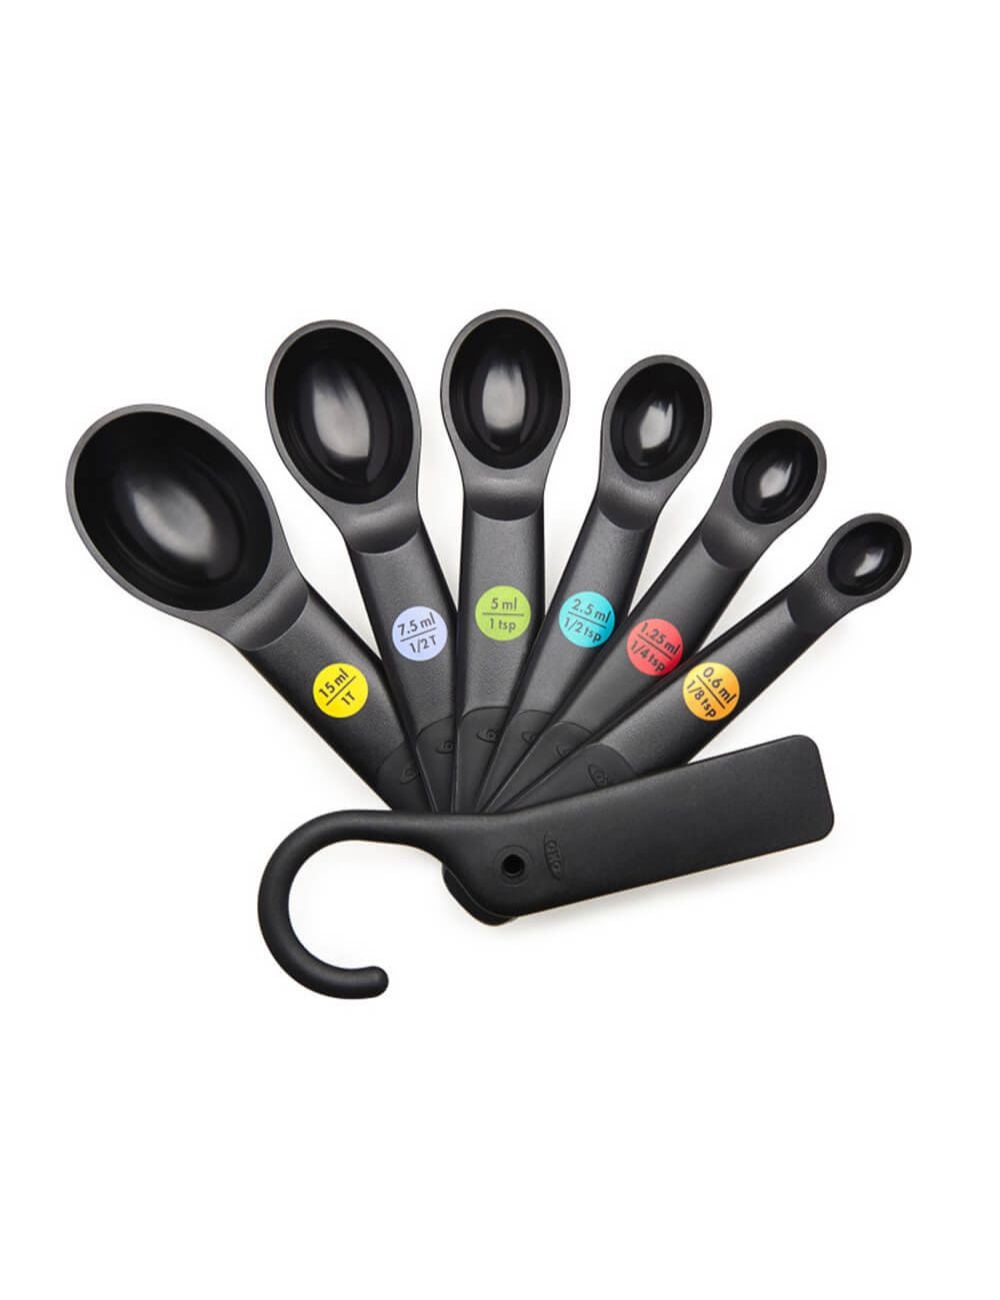 5 OXO Good Grips Measuring Spoons Black 1 T ~ 1/2 T ~ 1/2 tsp ~1/4